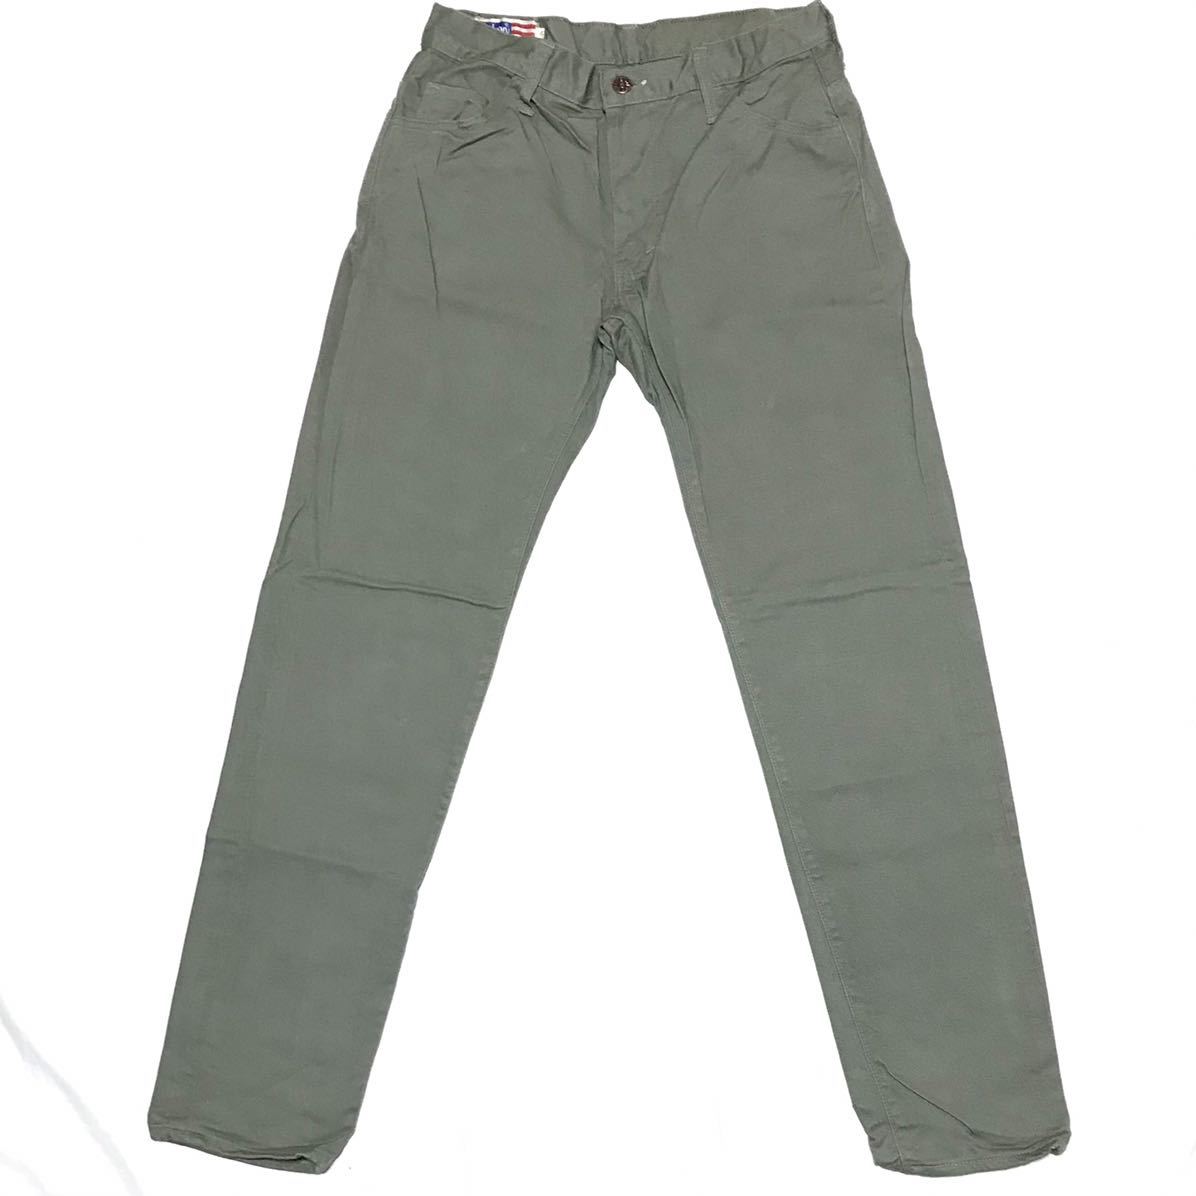 [ неиспользуемый товар ]70s 80s BOBSON 720 Bobson цвет джинсы W32/81. серый Vintage тонкий Denim брюки сделано в Японии Okayama снят с производства 8